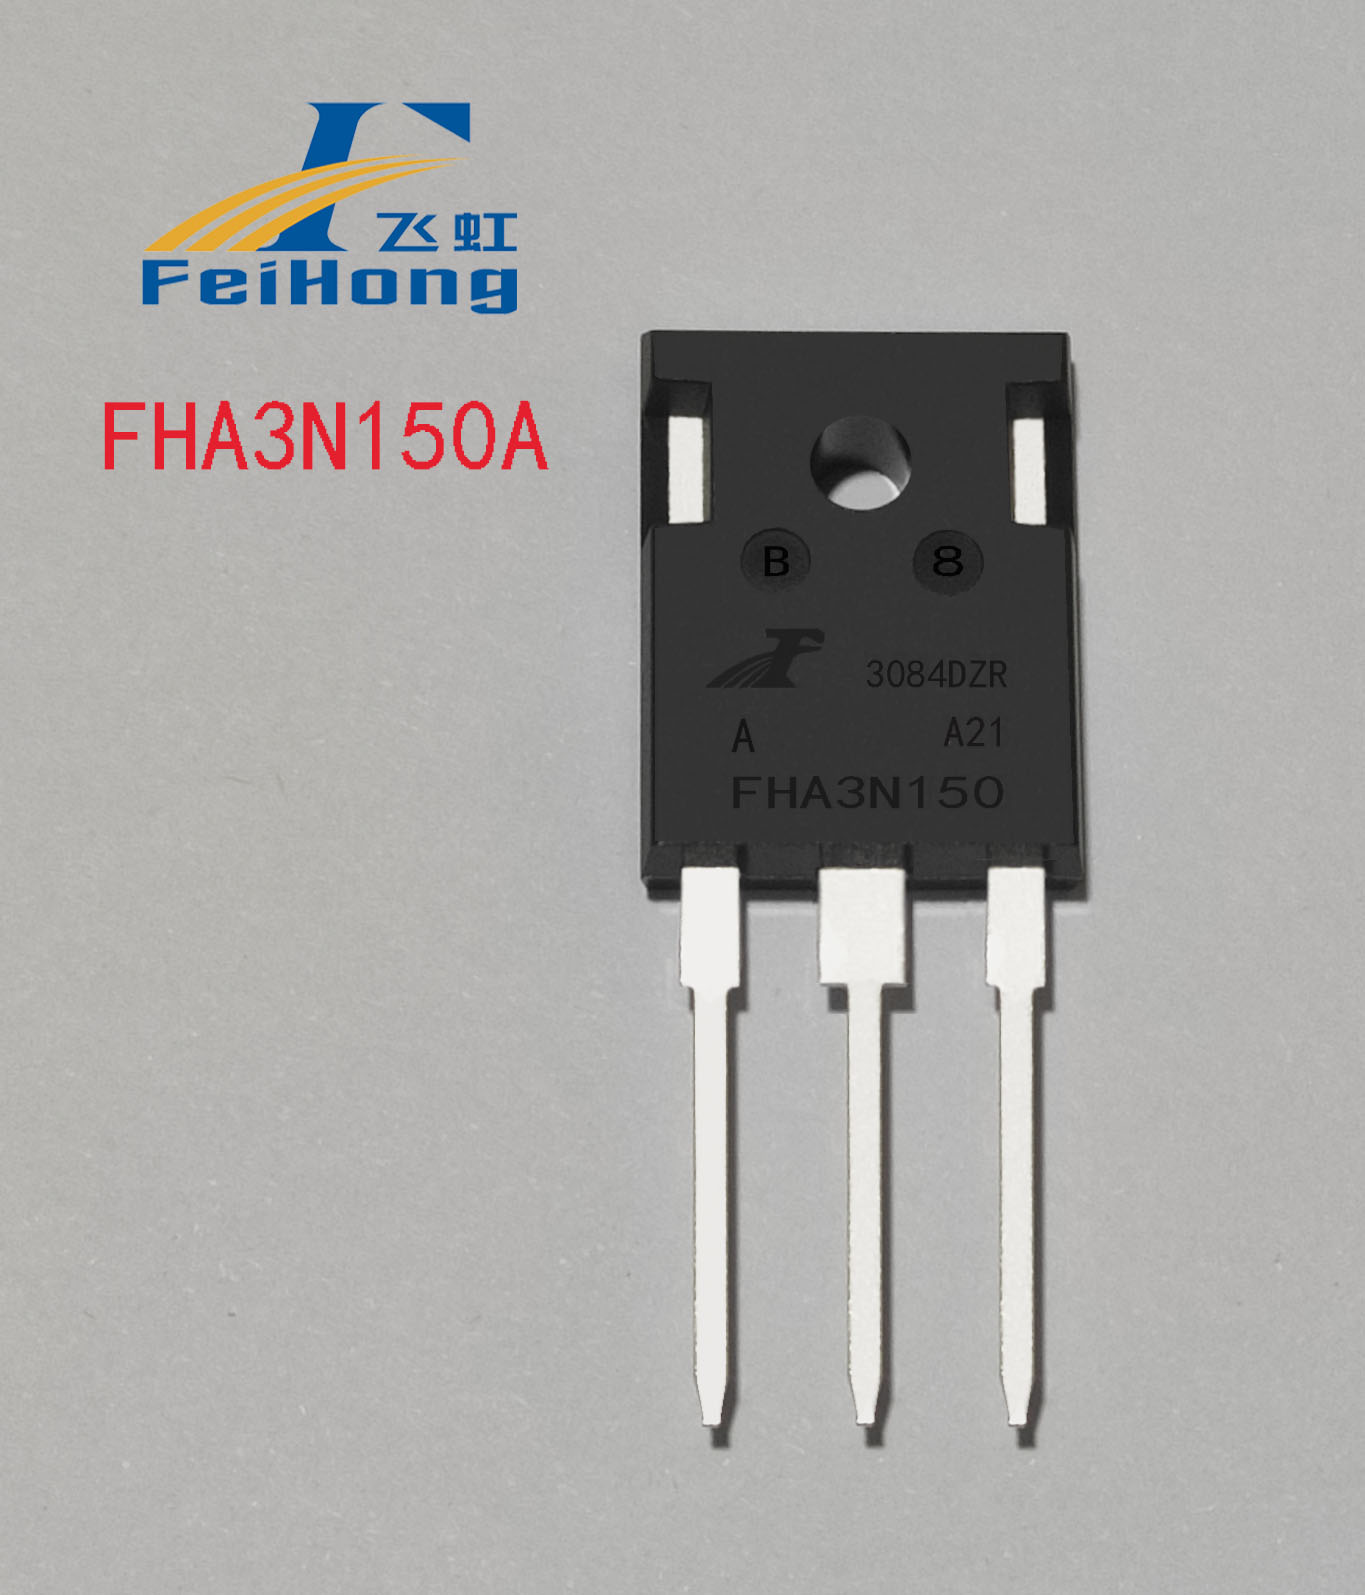 代换3N150场效应管，FHA3N150A国产MOS管更适合智能电表电路用